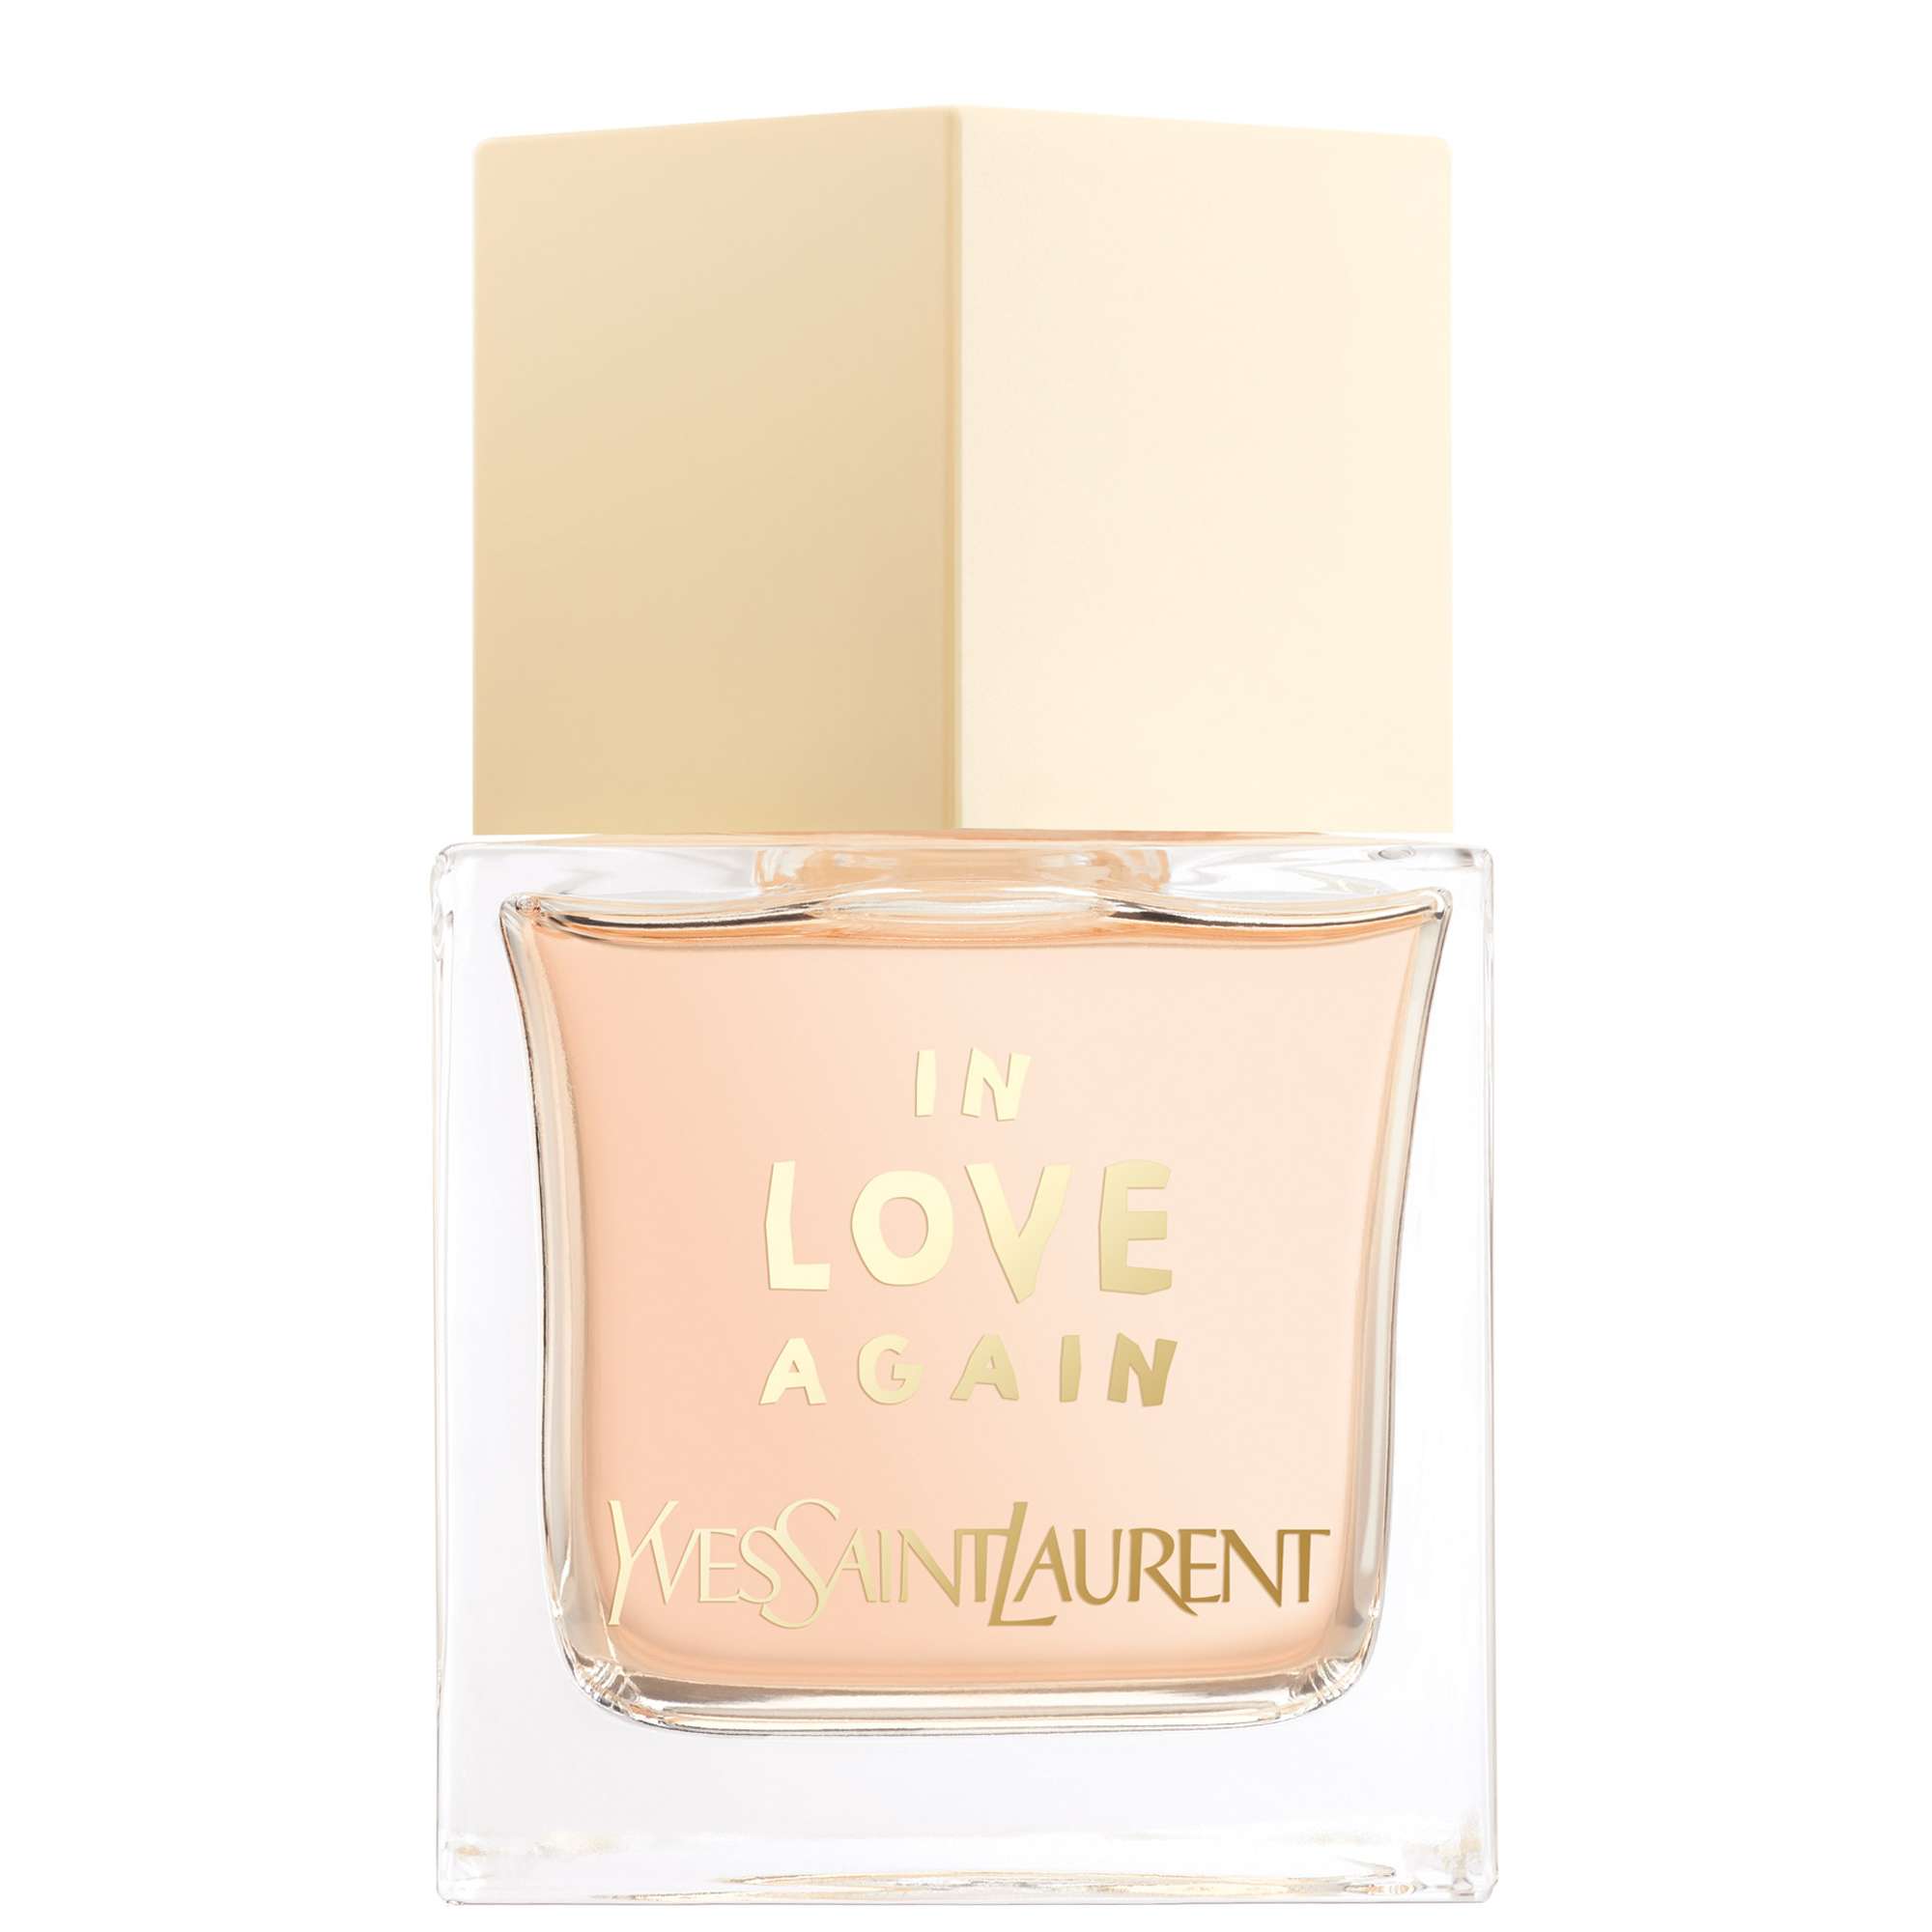 Photos - Women's Fragrance Yves Saint Laurent La Collection In Love Again Eau de Toilette Spray 80ml 